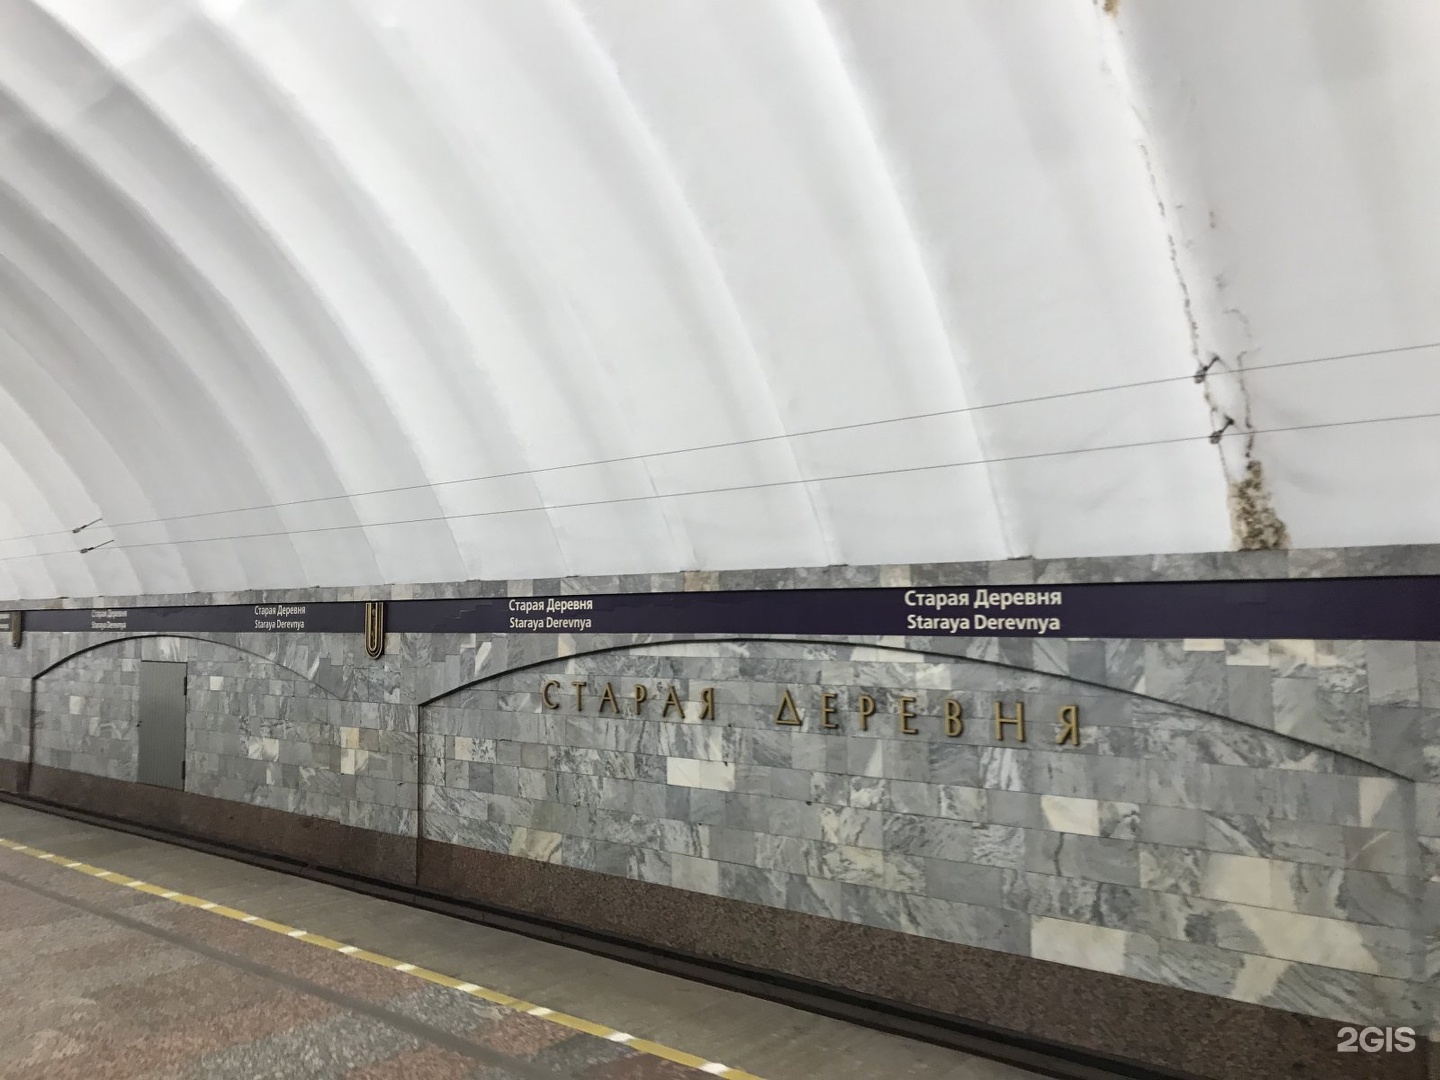 старая деревня станция метро санкт петербург